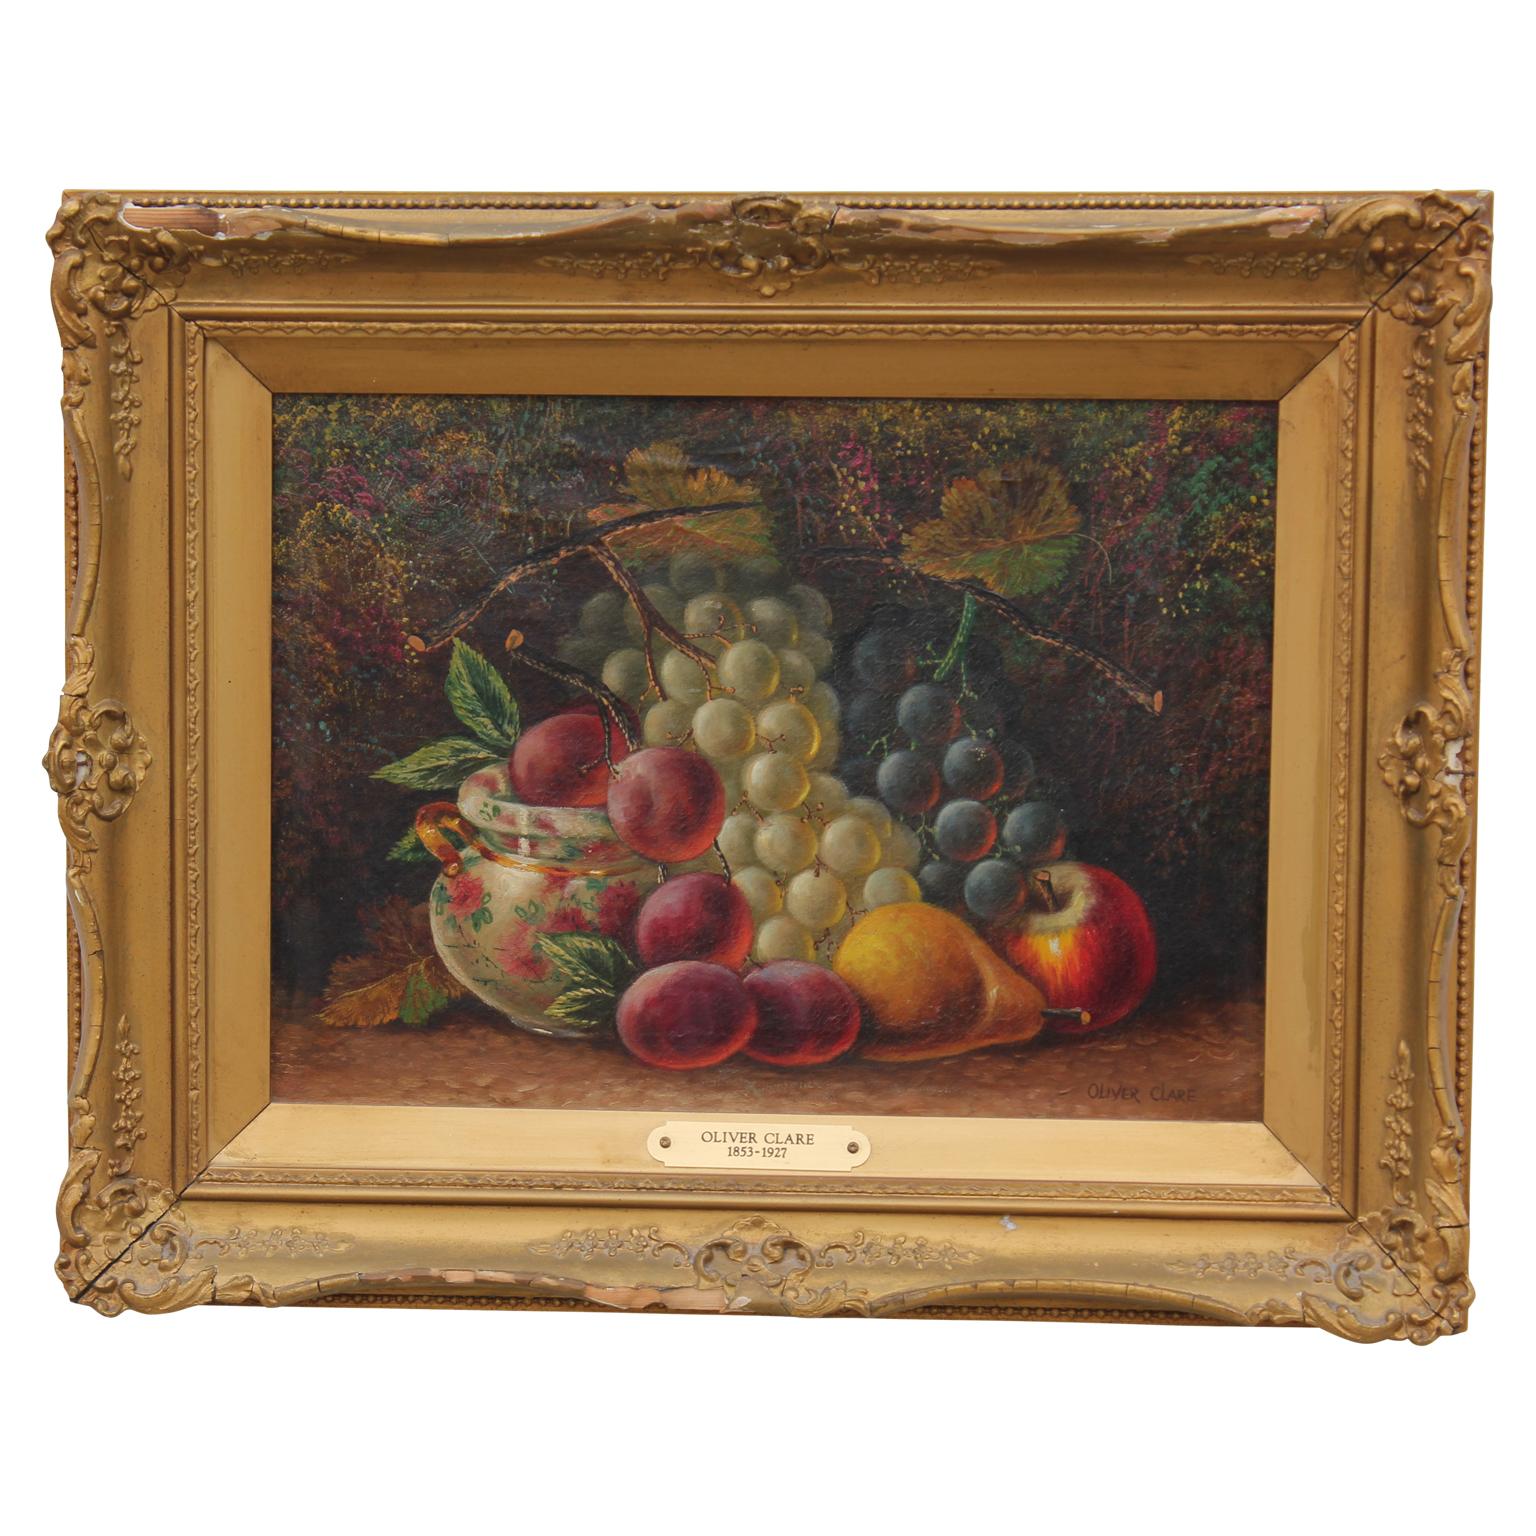 Naturalistisches Vanitas-Obststillleben mit Trauben, Birnen und Äpfeln